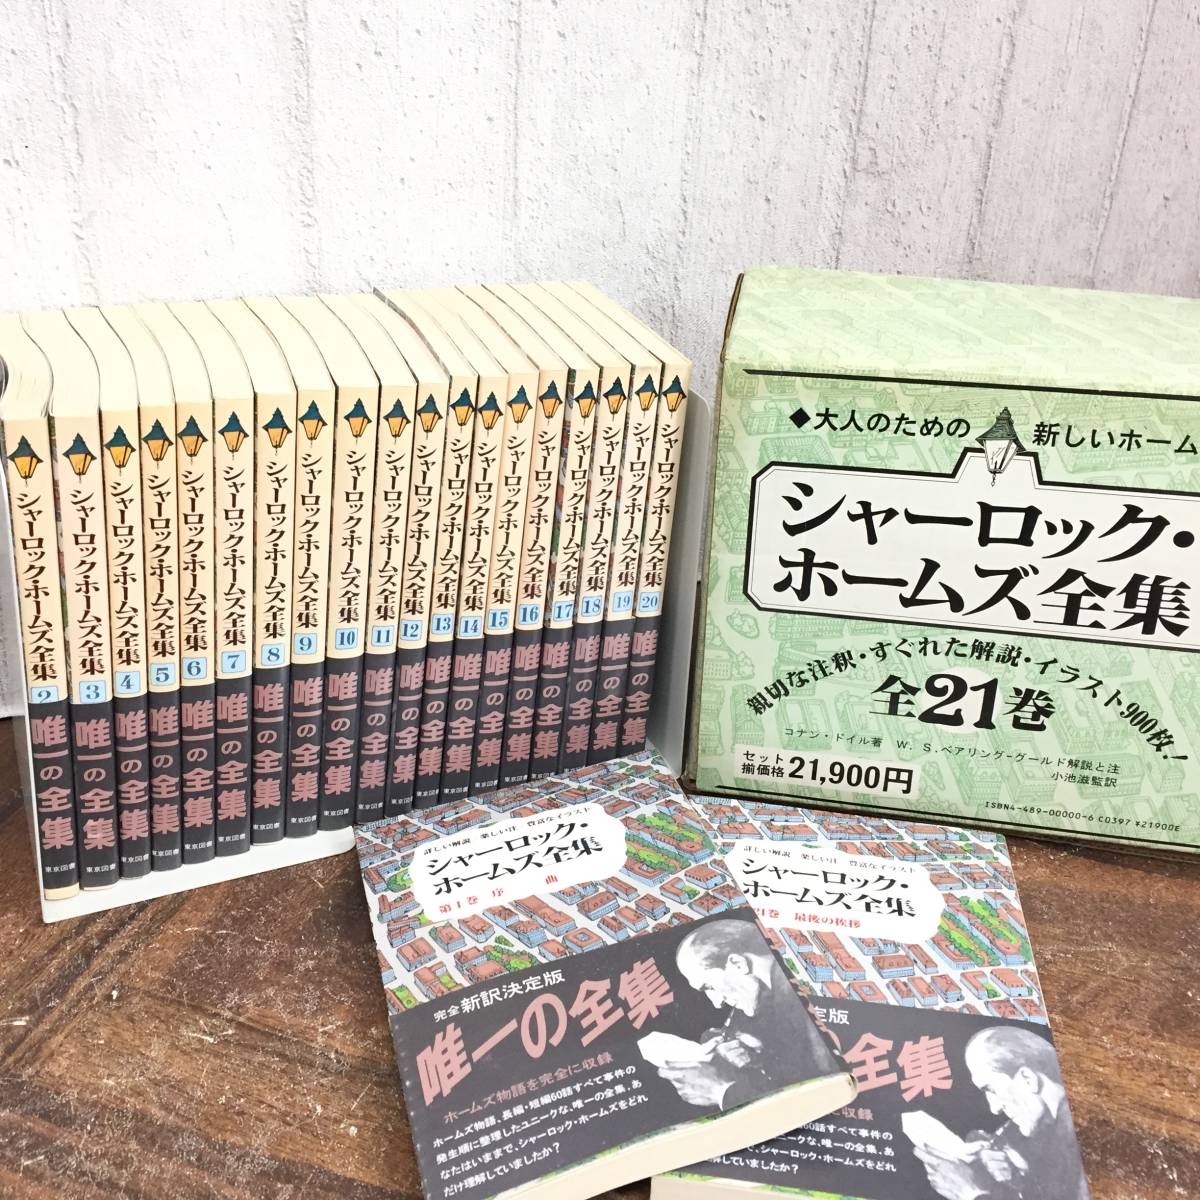 シャーロック・ホームズ全集 全21巻セット コナン・ドイル 東京図書